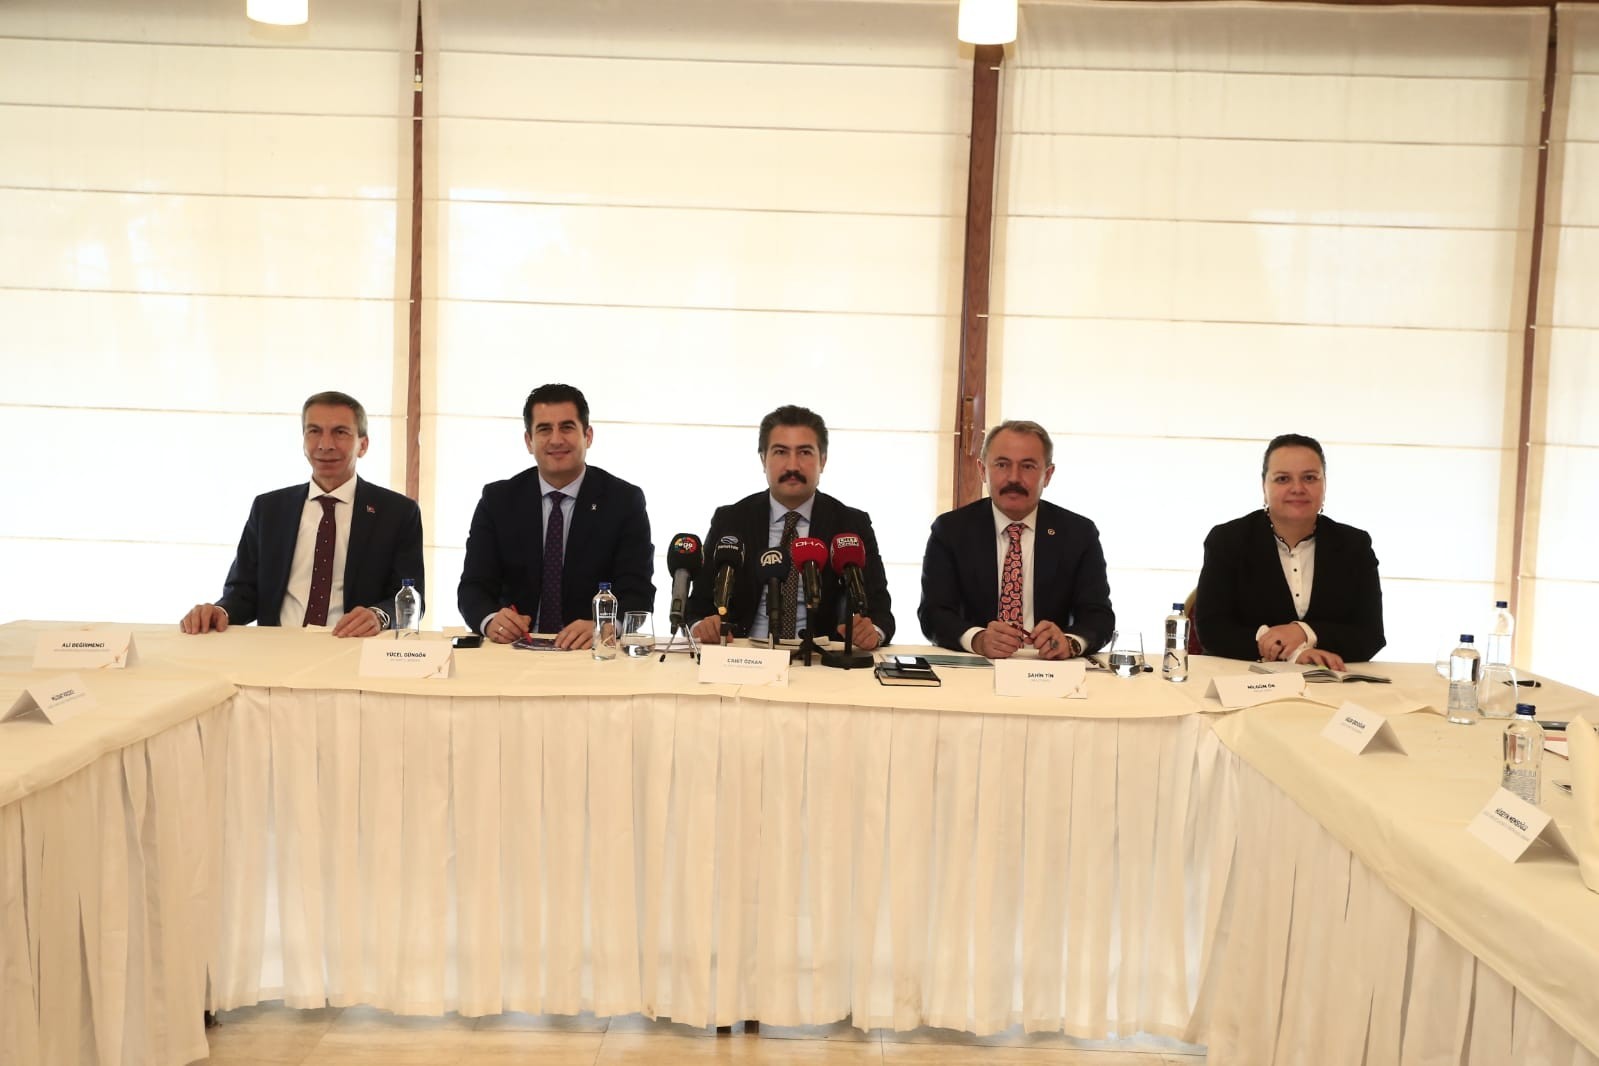 Denizli’de AK Parti Türkiye’nin yeni ekonomi modeli için Oda ve STK’larla buluştu #denizli